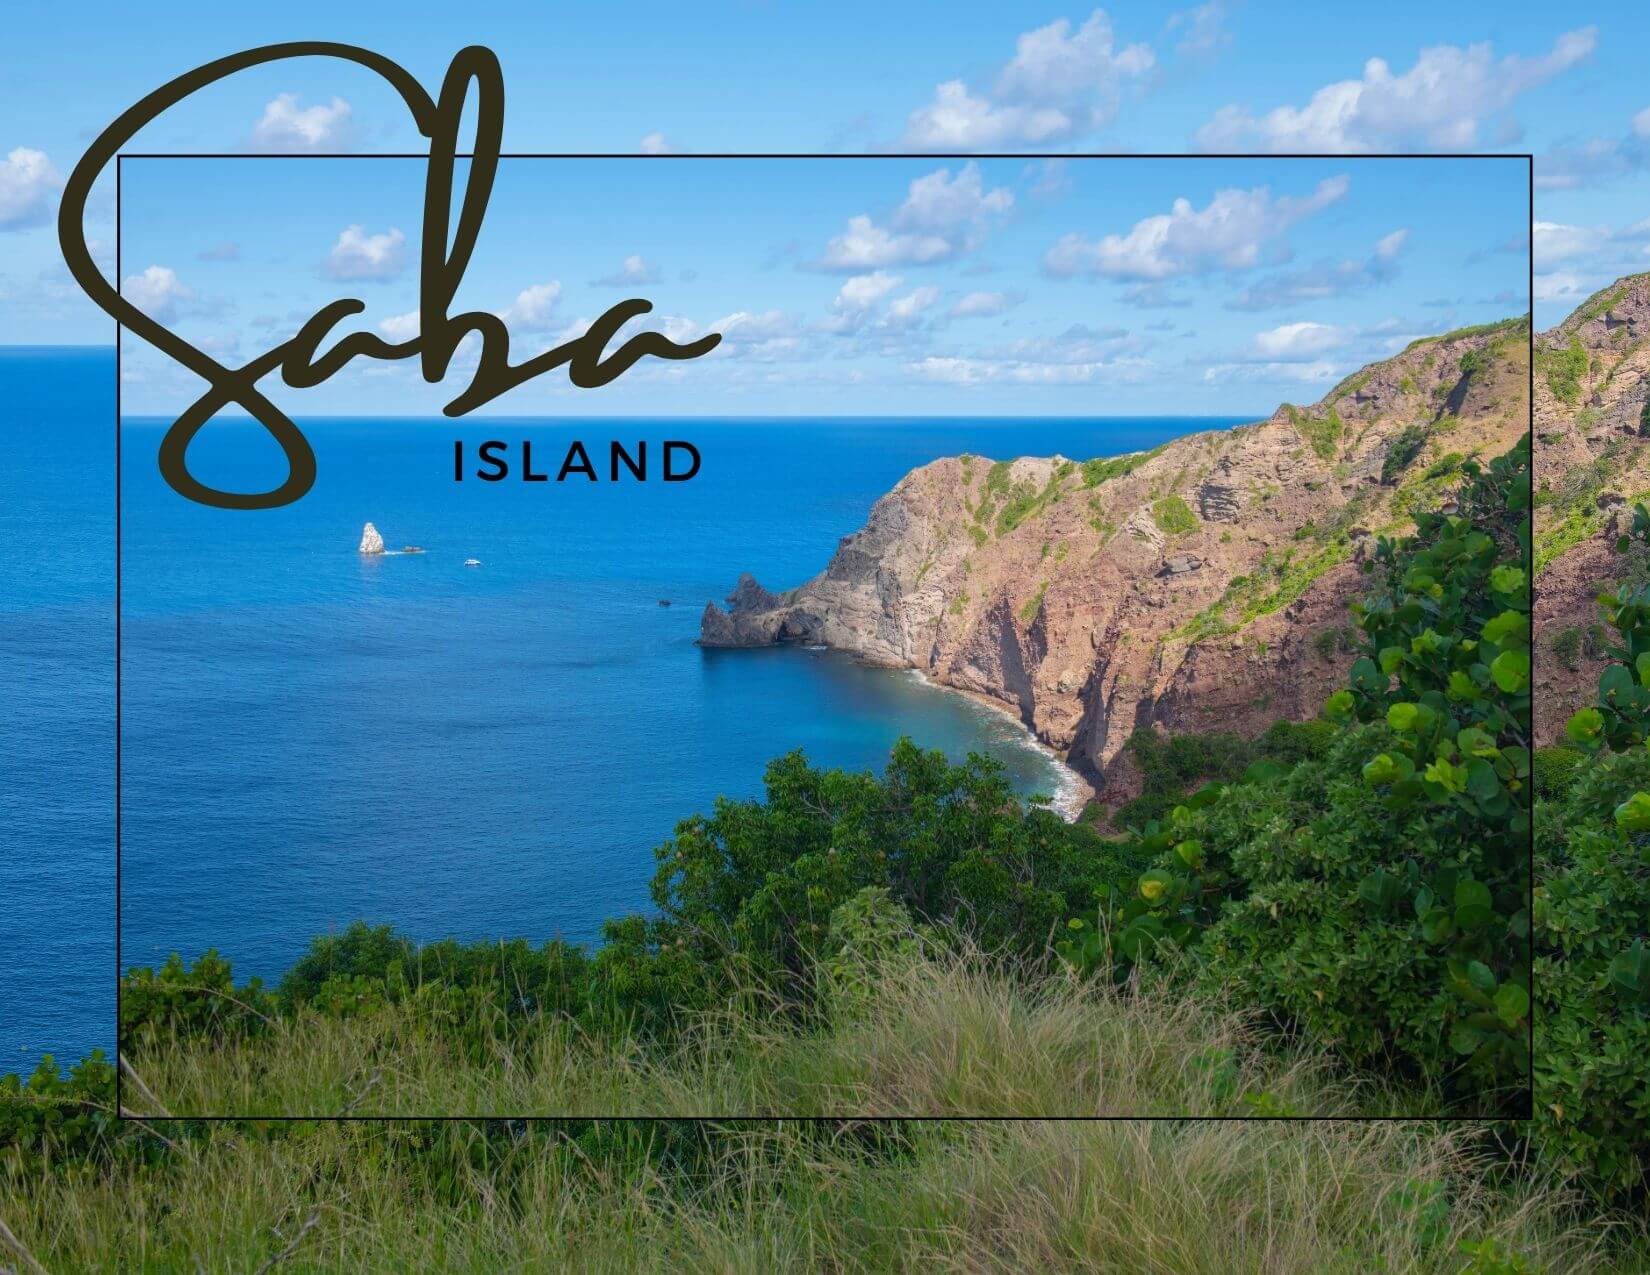 Saba island